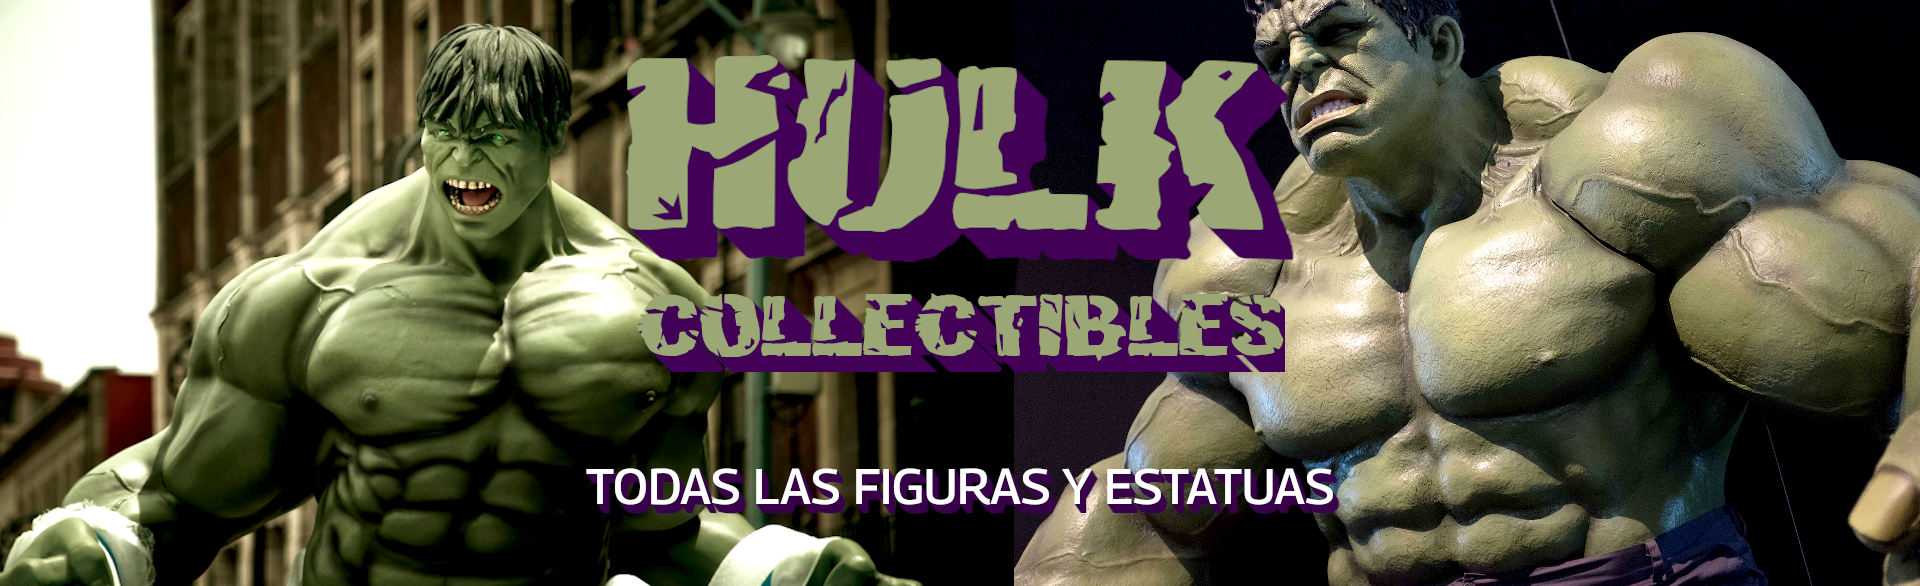 Hulk Collectibles